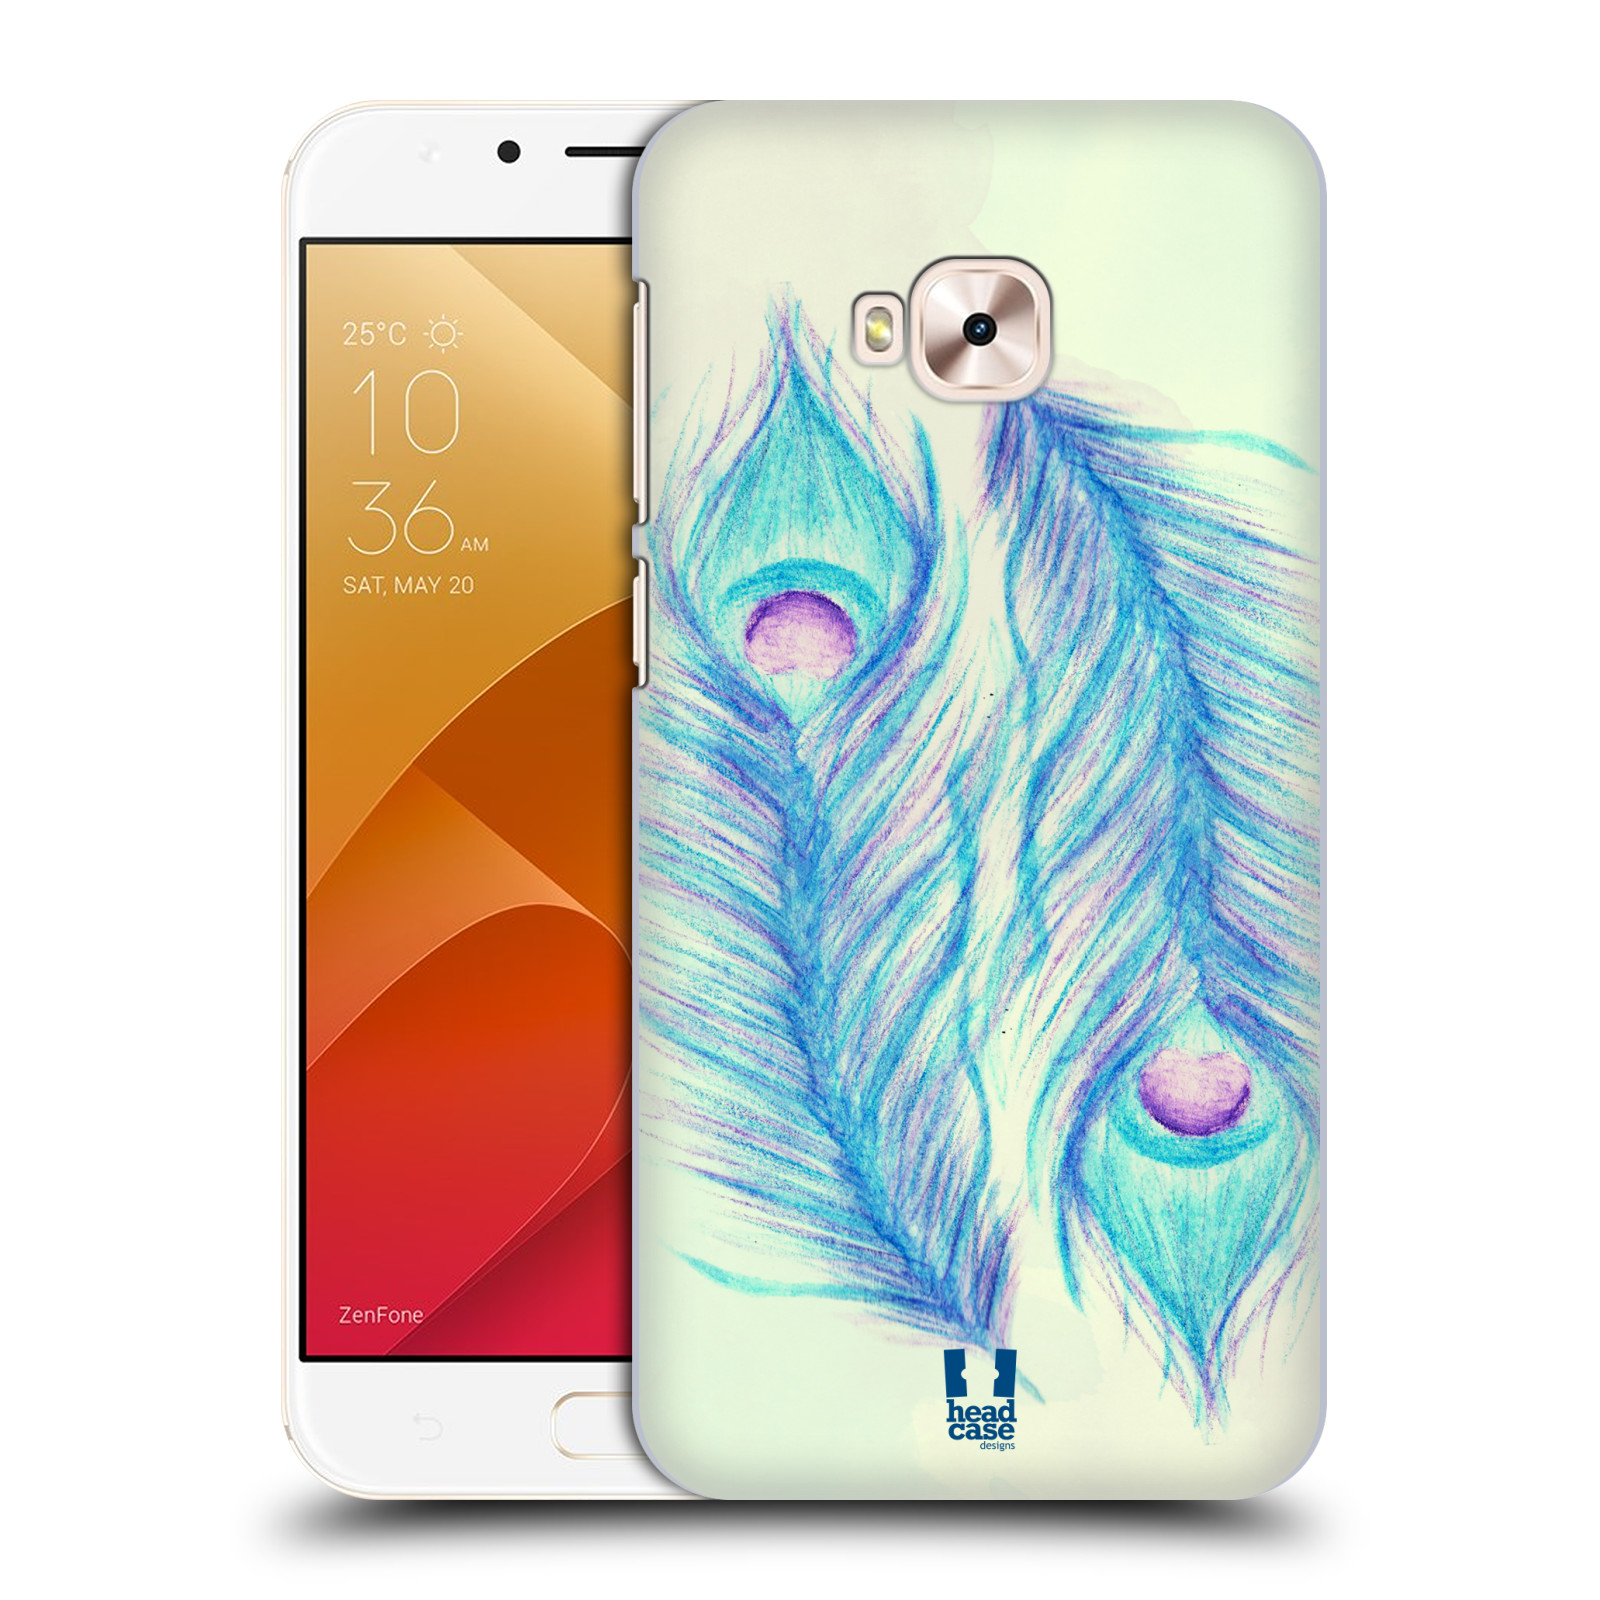 HEAD CASE plastový obal na mobil Asus Zenfone 4 Selfie Pro ZD552KL vzor Paví pírka barevná MODRÁ PÁR